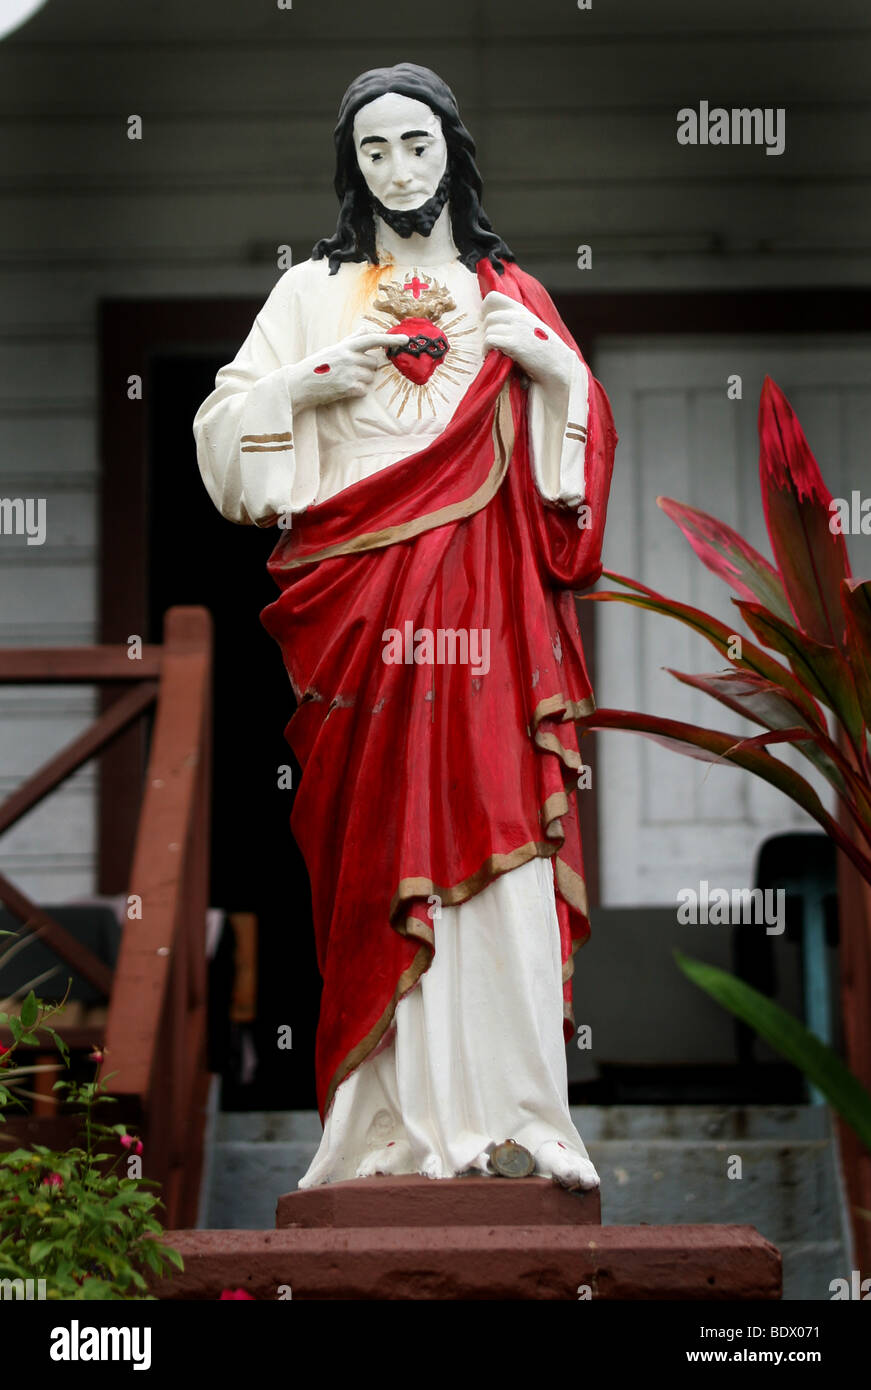 Una estatua de Cristo refleja el origen hispano de la cristiandad en Vavau Tonga Tonga. Foto de stock